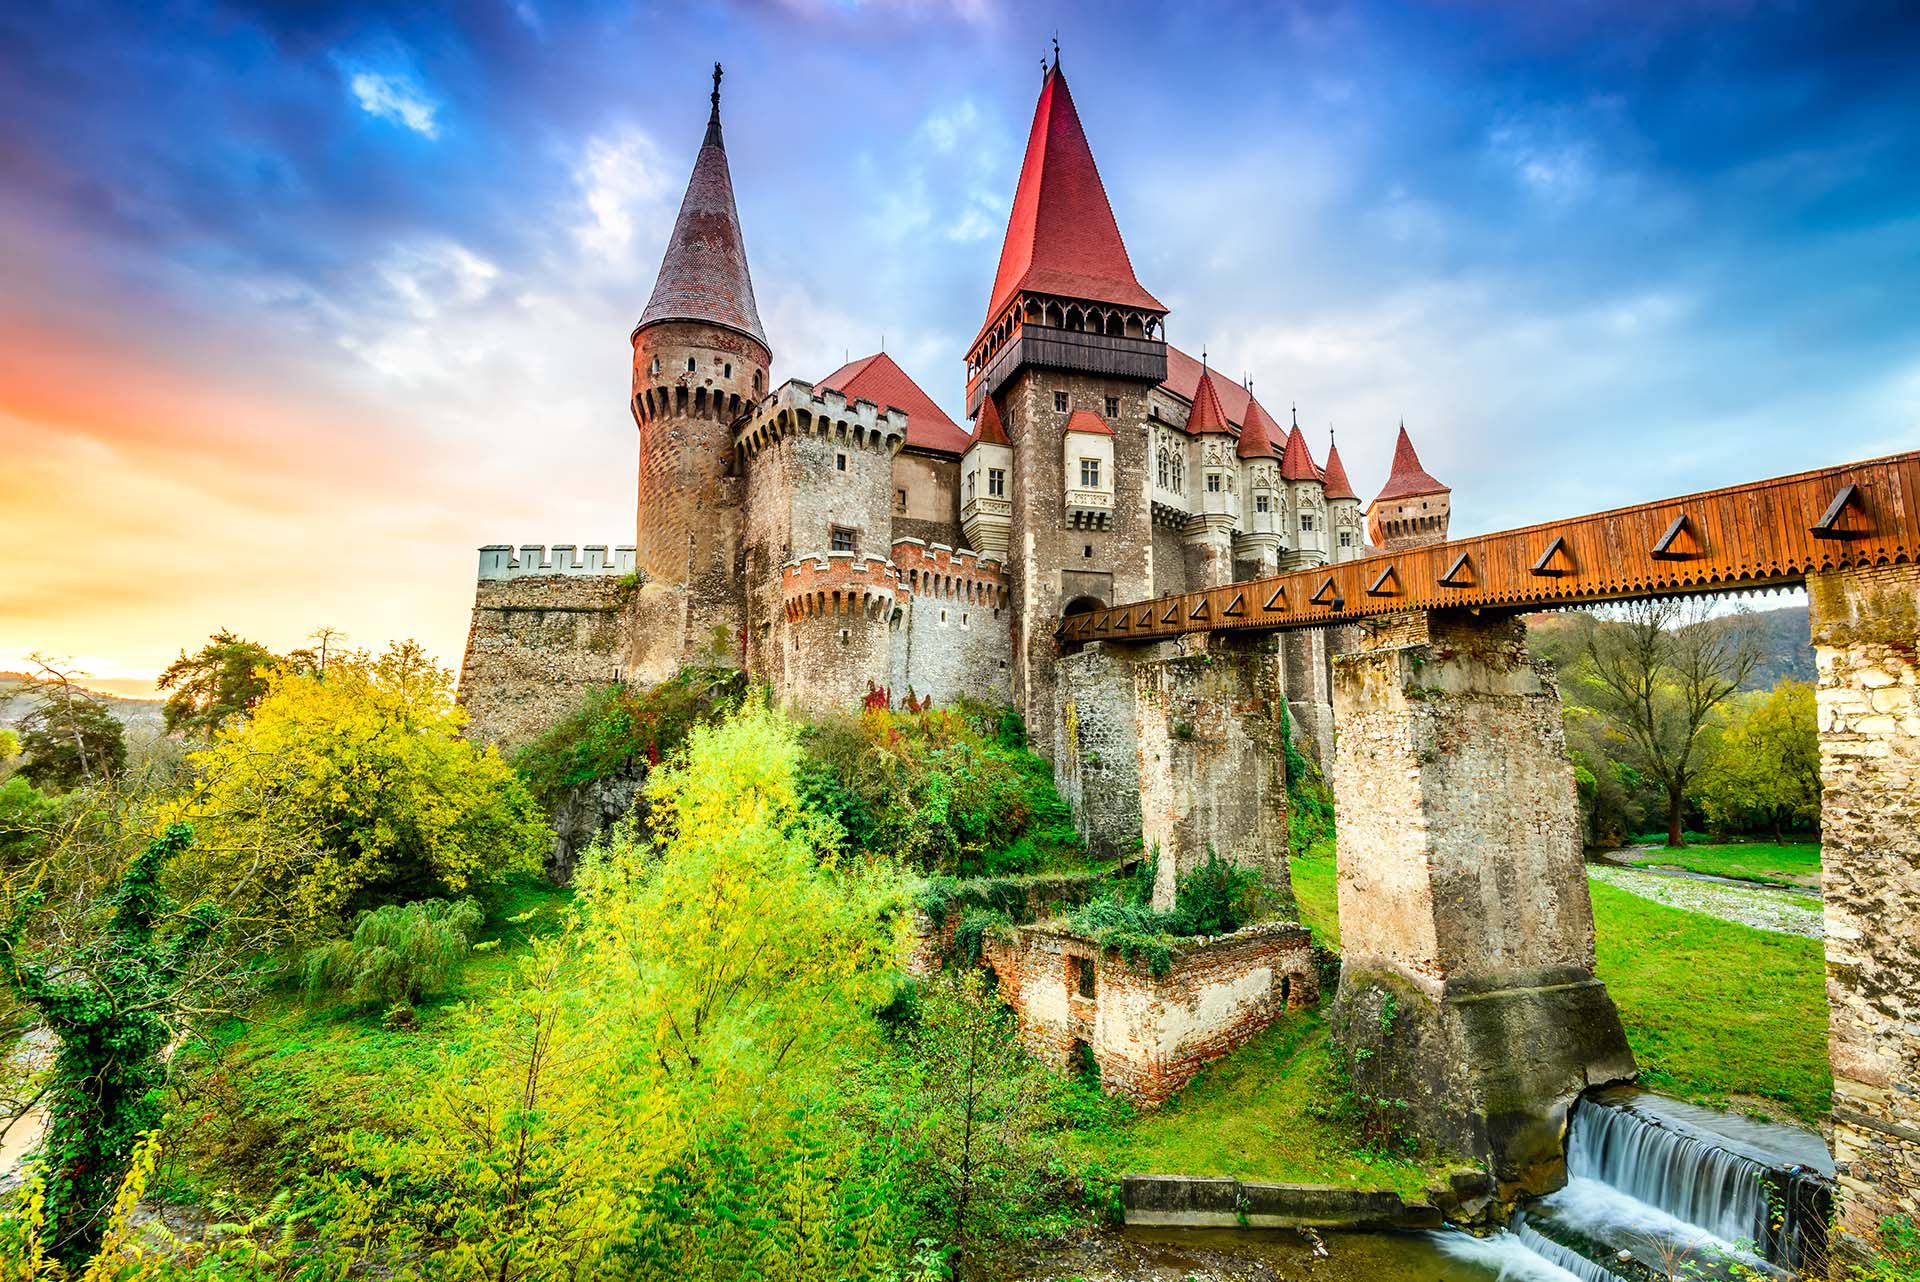 Los valles boscosos de Transilvania y los castillos góticos están siempre incrustados en la imaginación popular. Incluso antes de llegar, la mayoría de los visitantes pueden imaginarse esta tierra de oscuros cuentos de hadas, donde la niebla cubre como telarañas los Montes Cárpatos